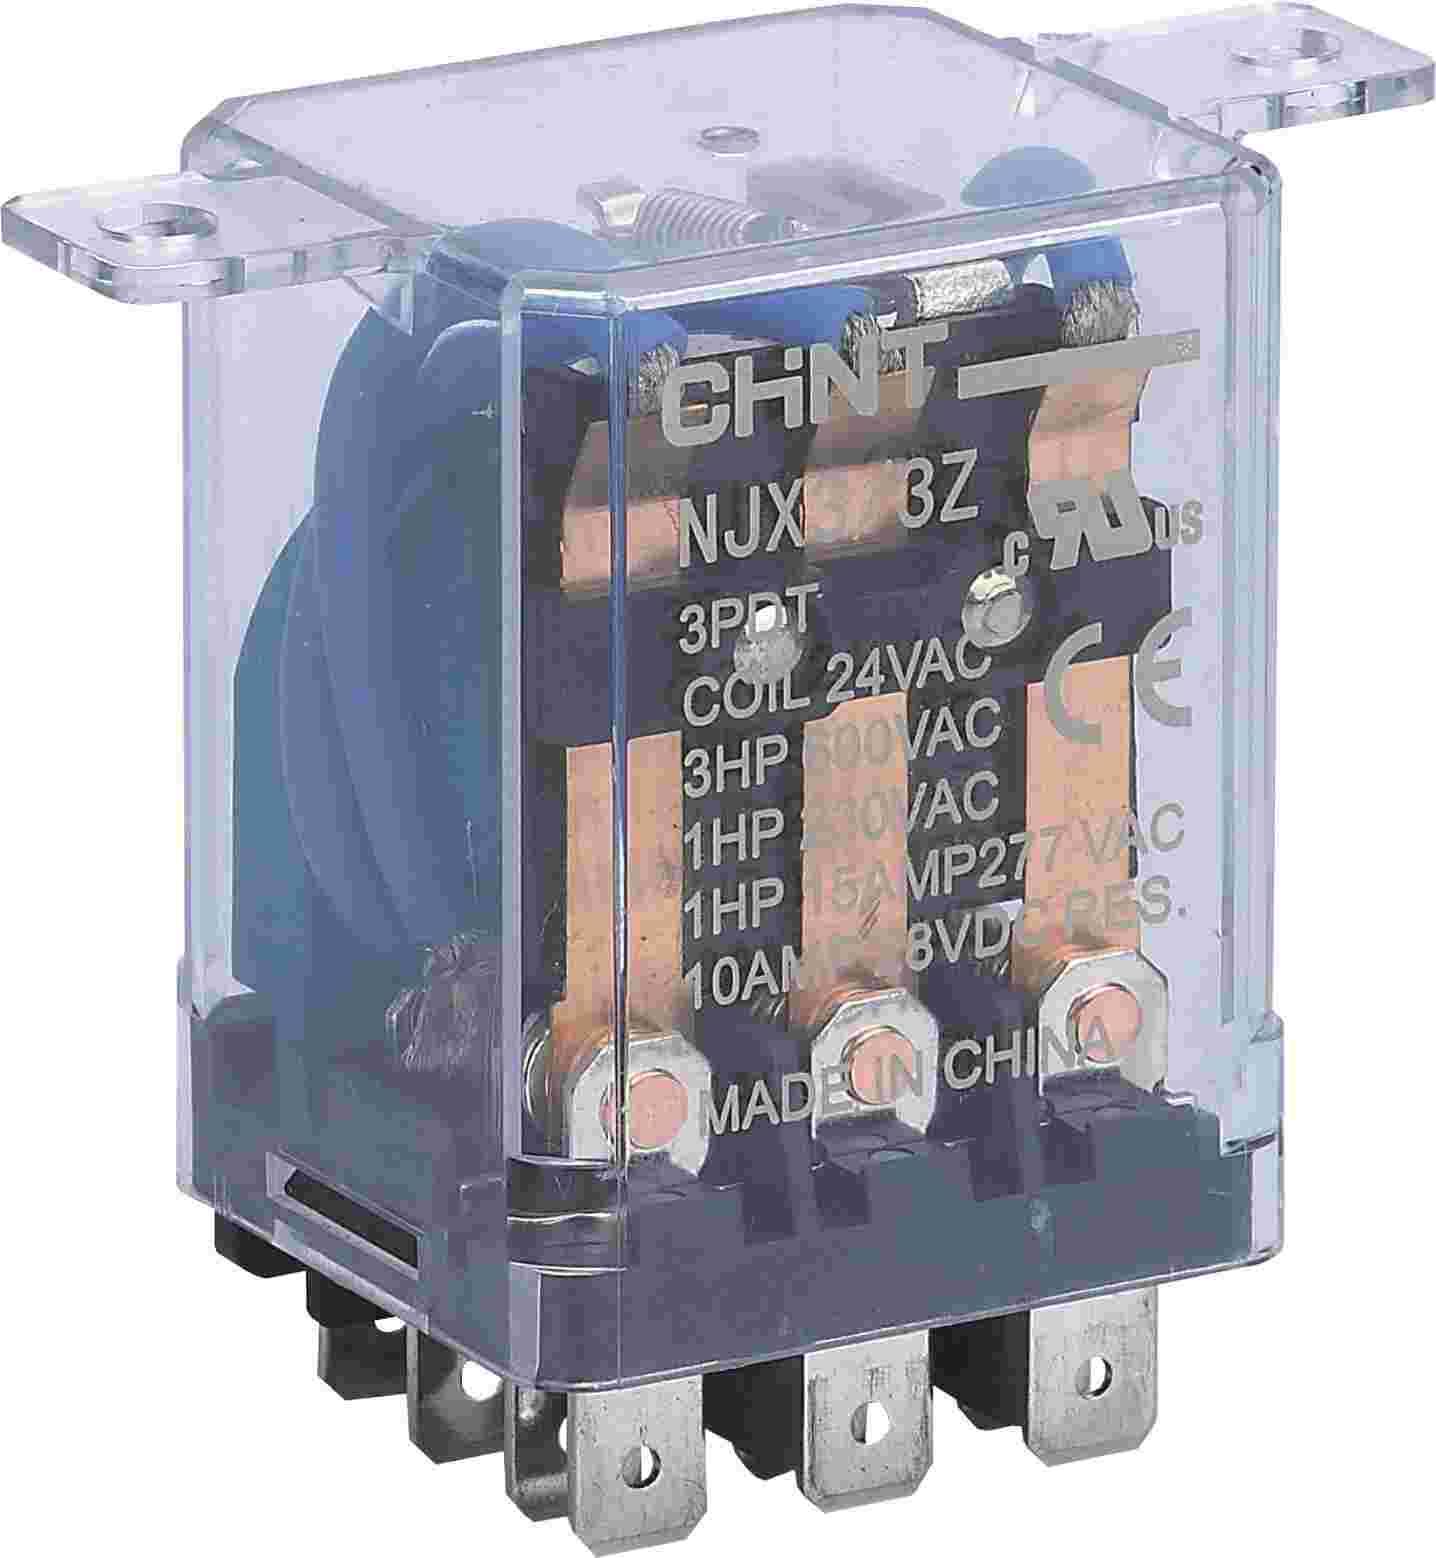 NJX3-3Z 小型电磁继电器侧俯图.png